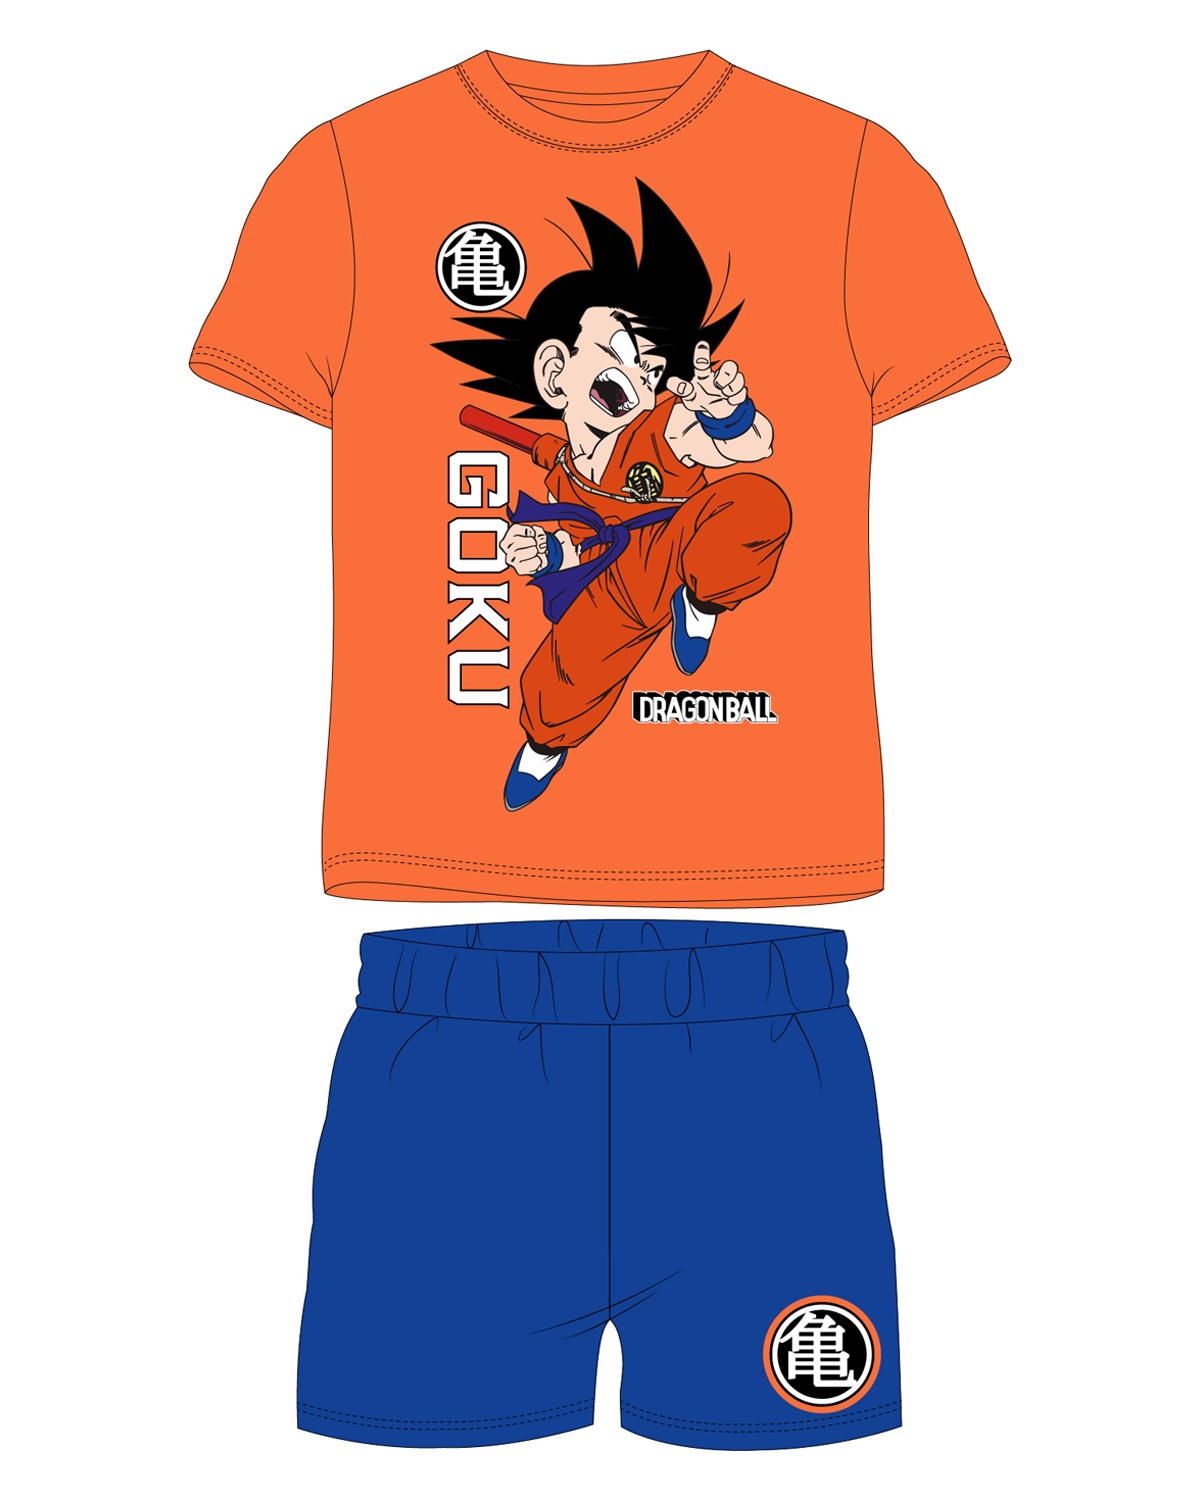 Dragon Ball - licence Chlapecké pyžamo - Dragon Ball 5204072, oranžová / modrá Barva: Oranžová, Velikost: 164